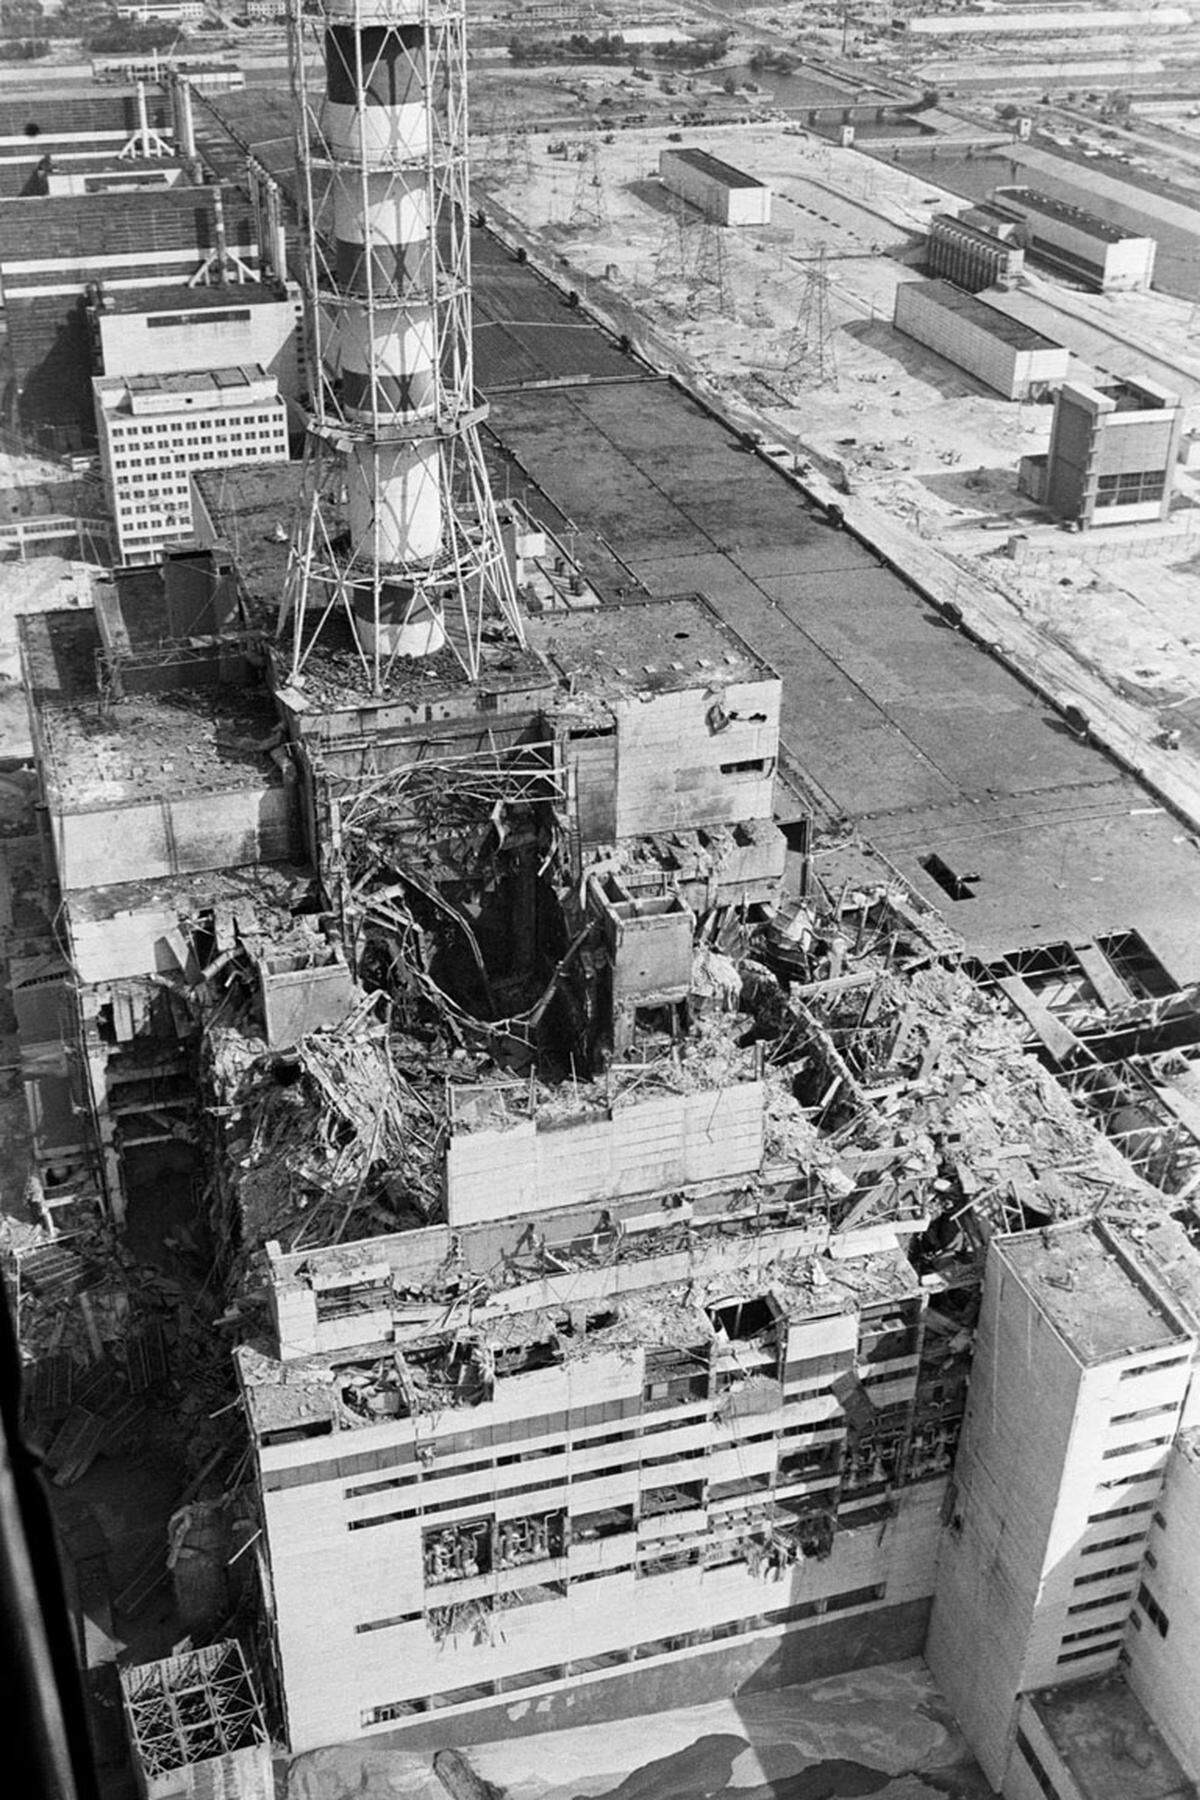 Am 26. April 1986 explodiert nach einem fehlgeschlagenen Experiment - simuliert wird ein vollständiger Stromausfall, der letztlich zu einem unkontrollierten Leistungsanstieg führt - der Reaktorblock 4 des AKW Tschernobyl in der Ukraine. Eine Knallgasexplosion zerreißt das Reaktorgebäude, radioaktive Stoffe werden freigesetzt.